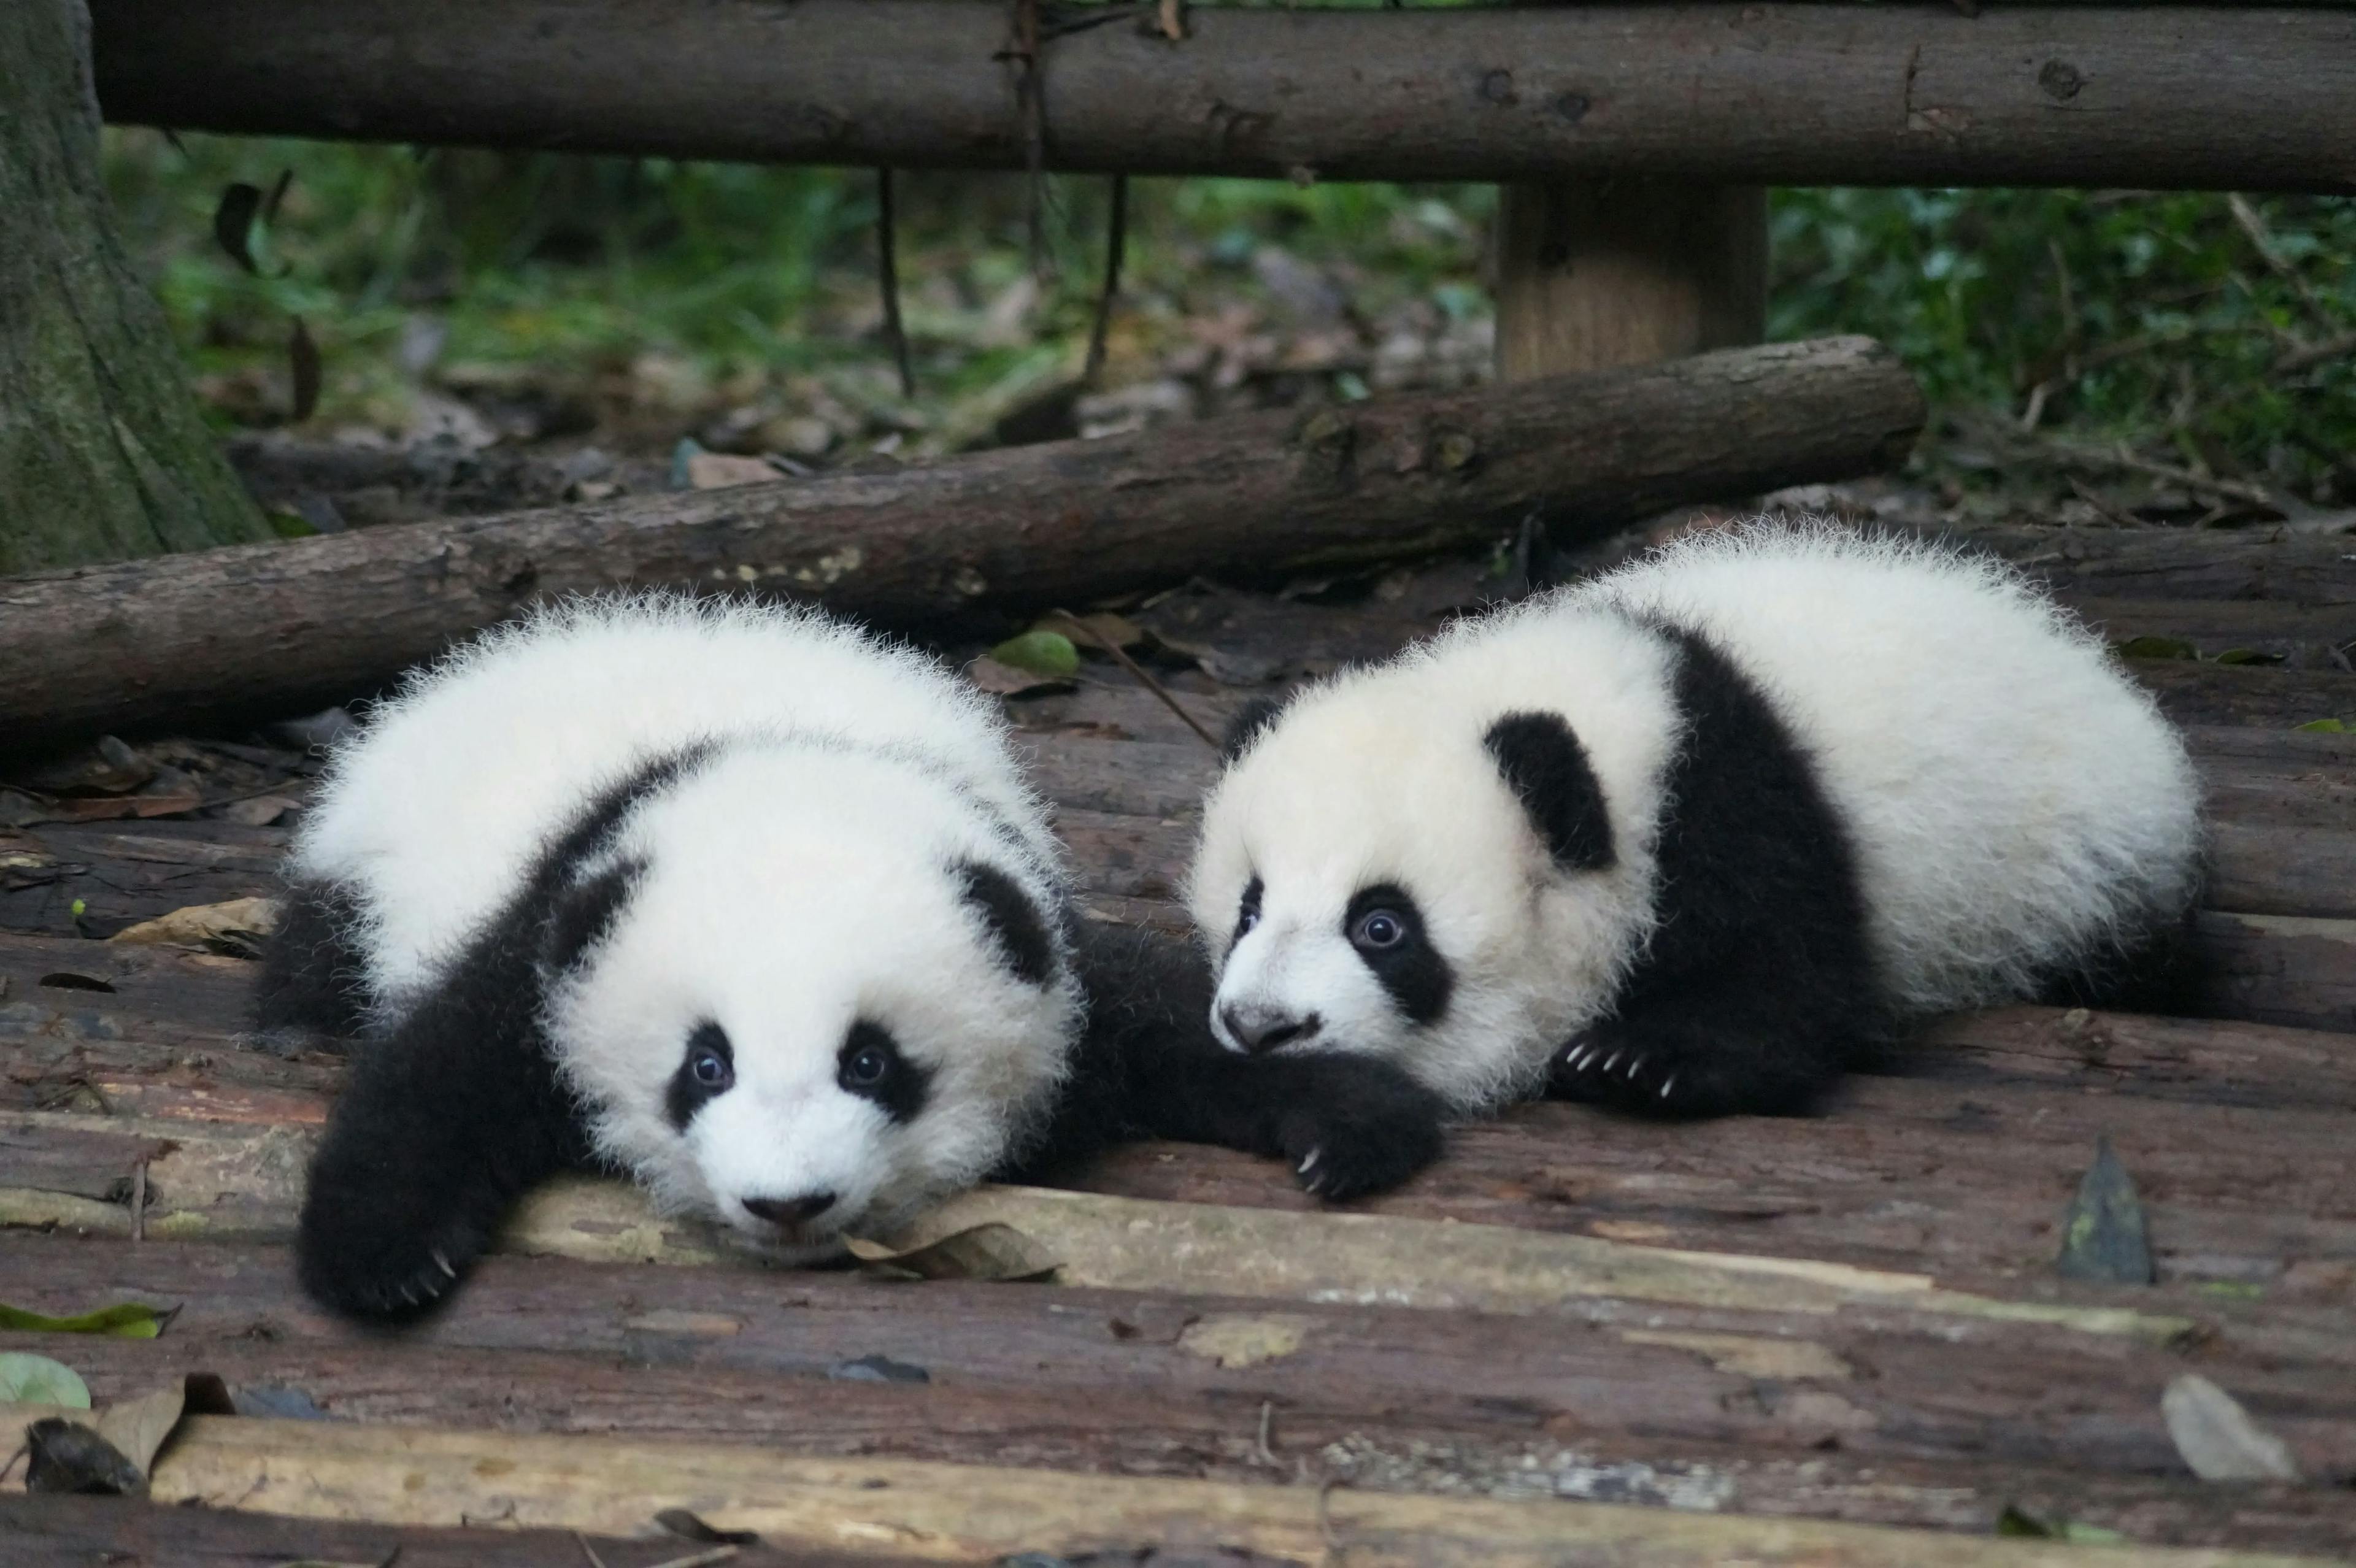 【Every Weekend】Panda's Hometown Chengdu | 4-Day Classic Tour: Pandas, Leshan Giant Buddha, and Mount Emei